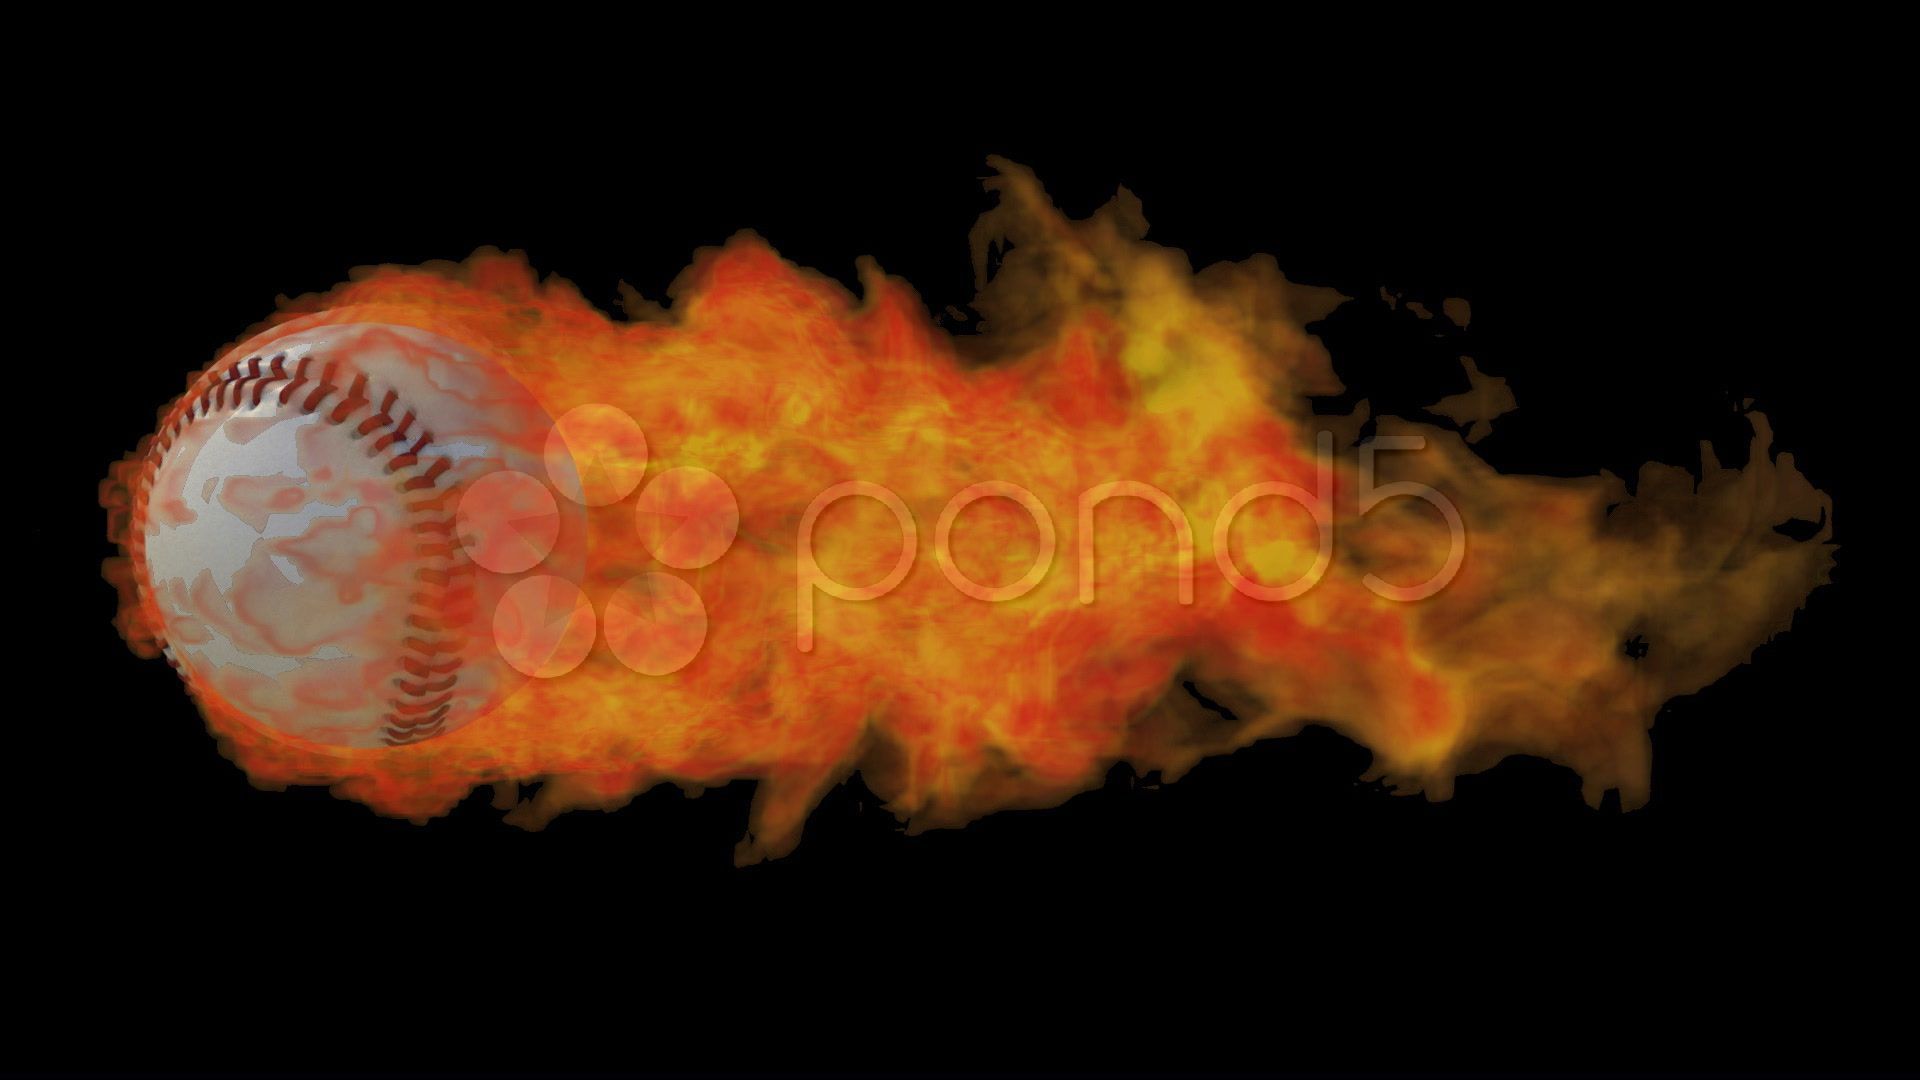 flaming-baseball-ball-baseball-fire-flaming-wallpapers-free-hd -